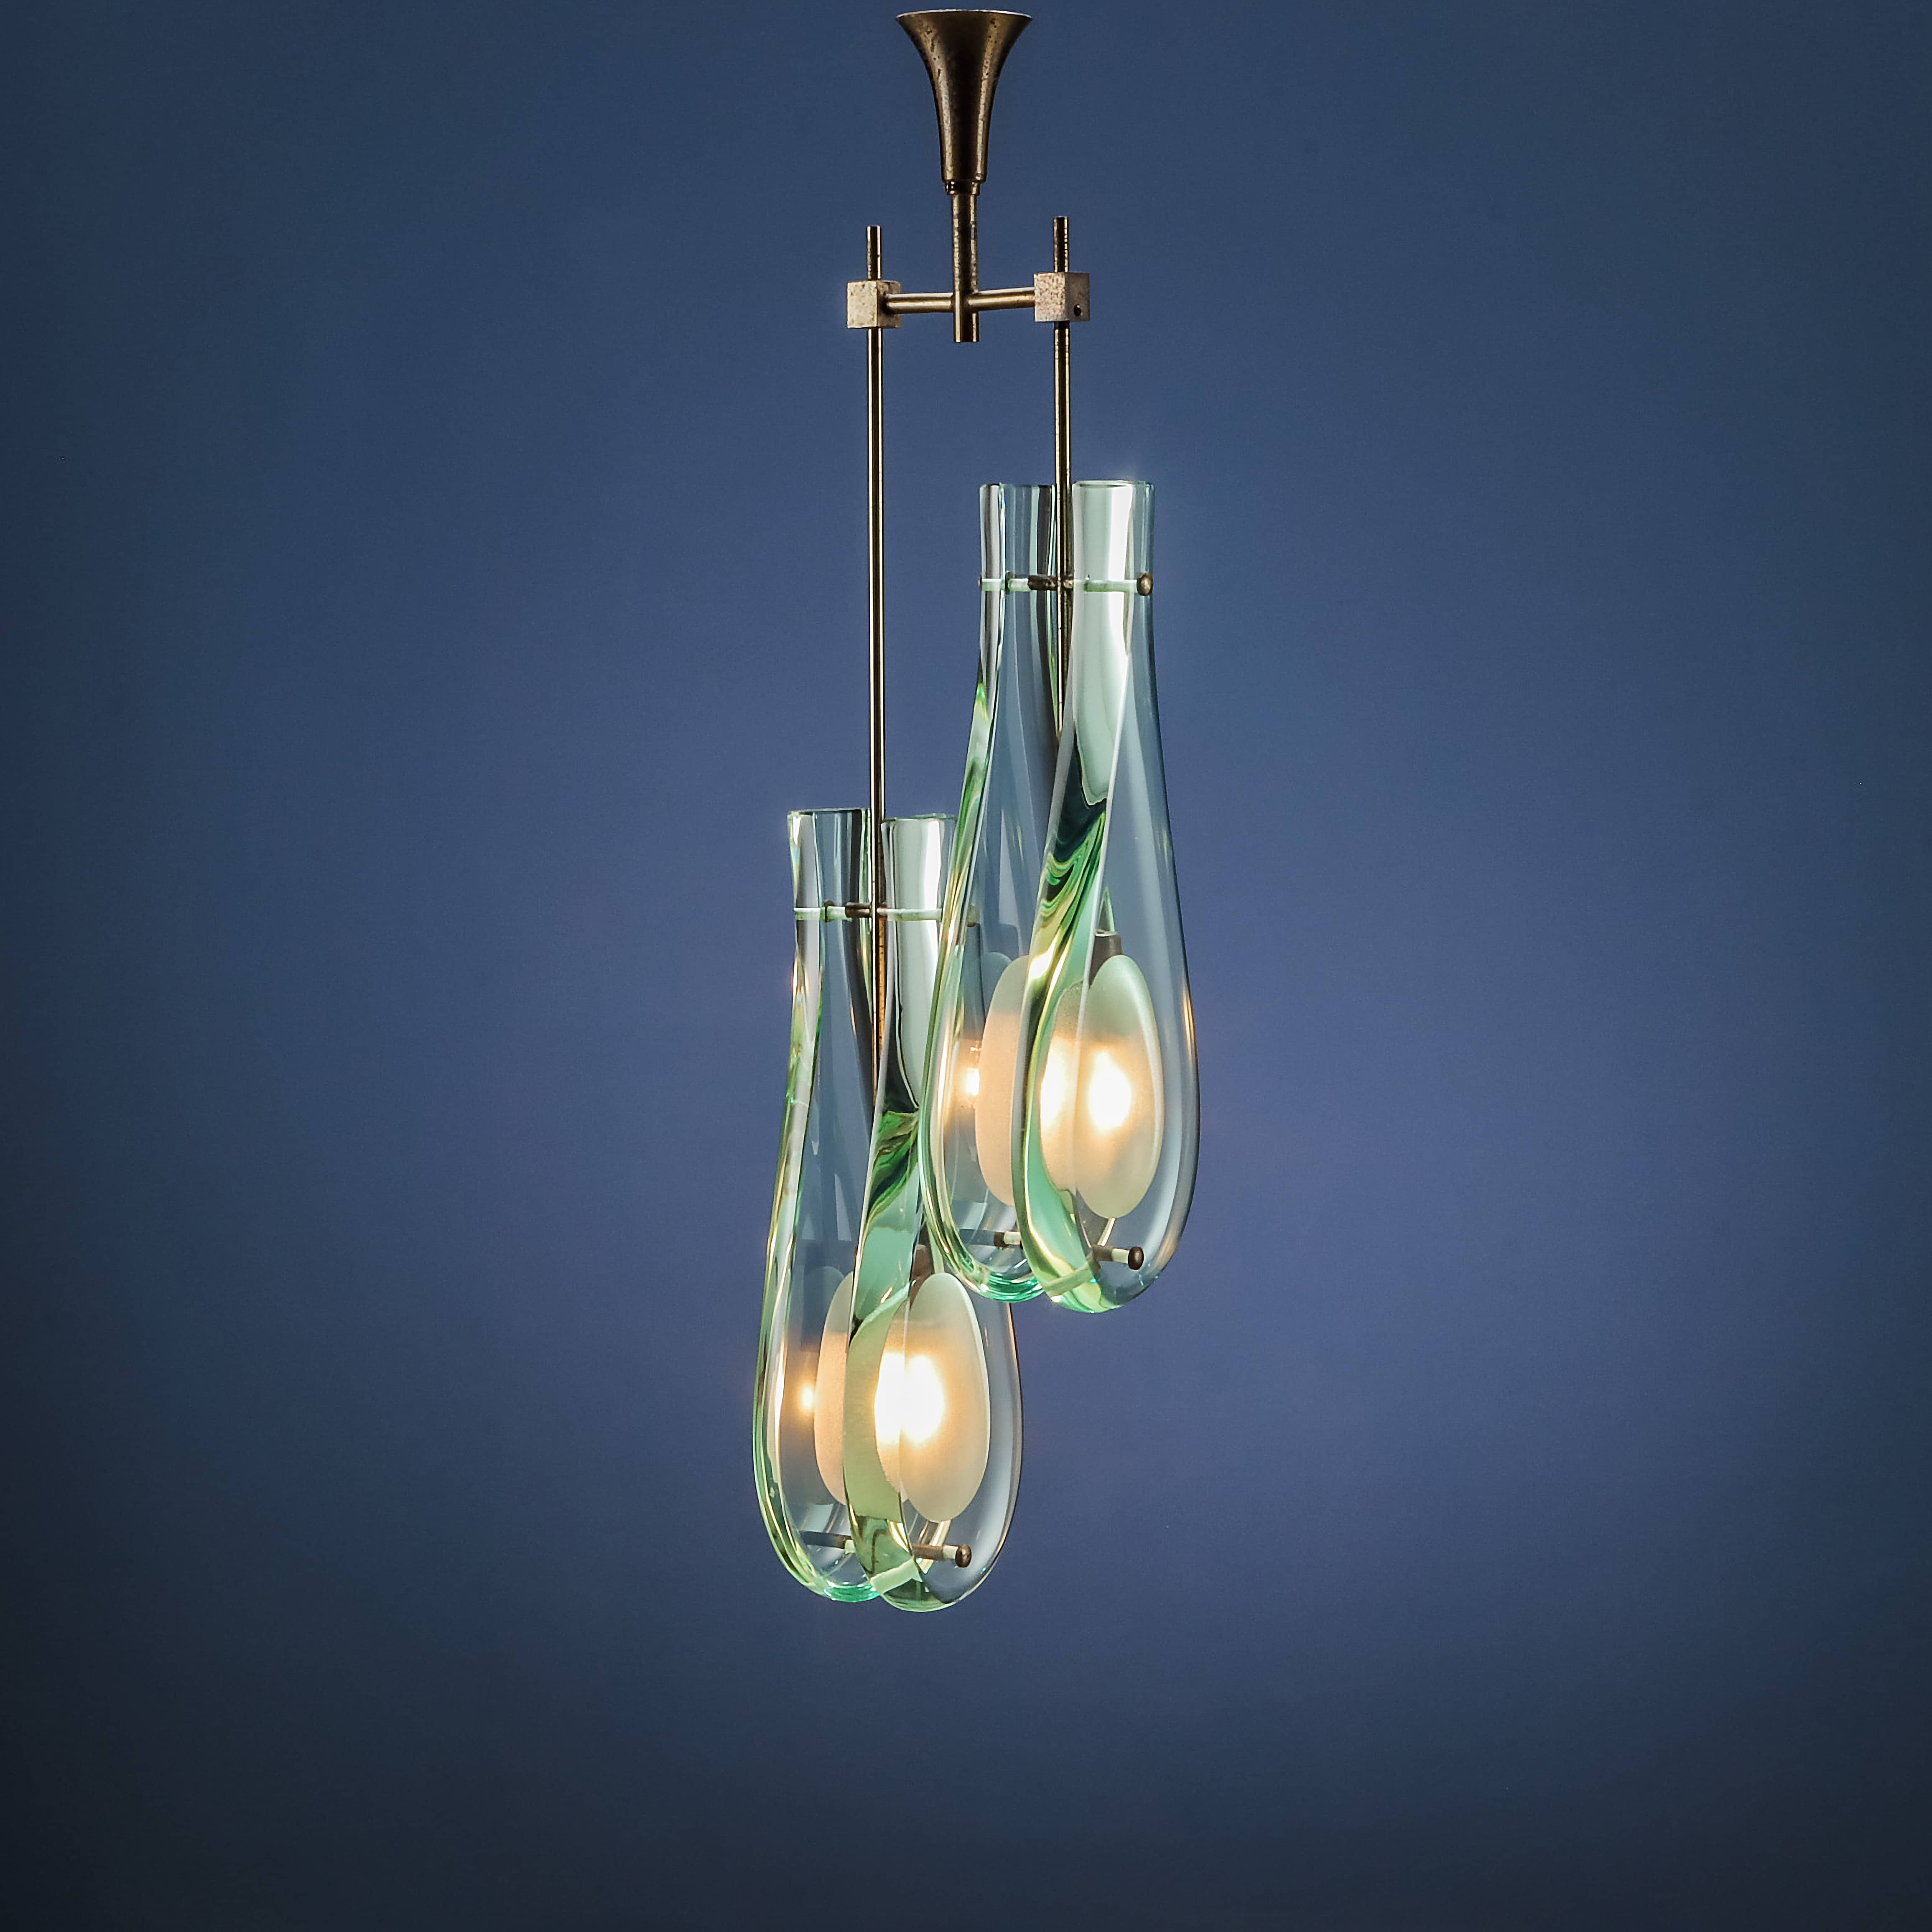 ‘2259/2’ lamp, Max Ingrand for FontanaArte